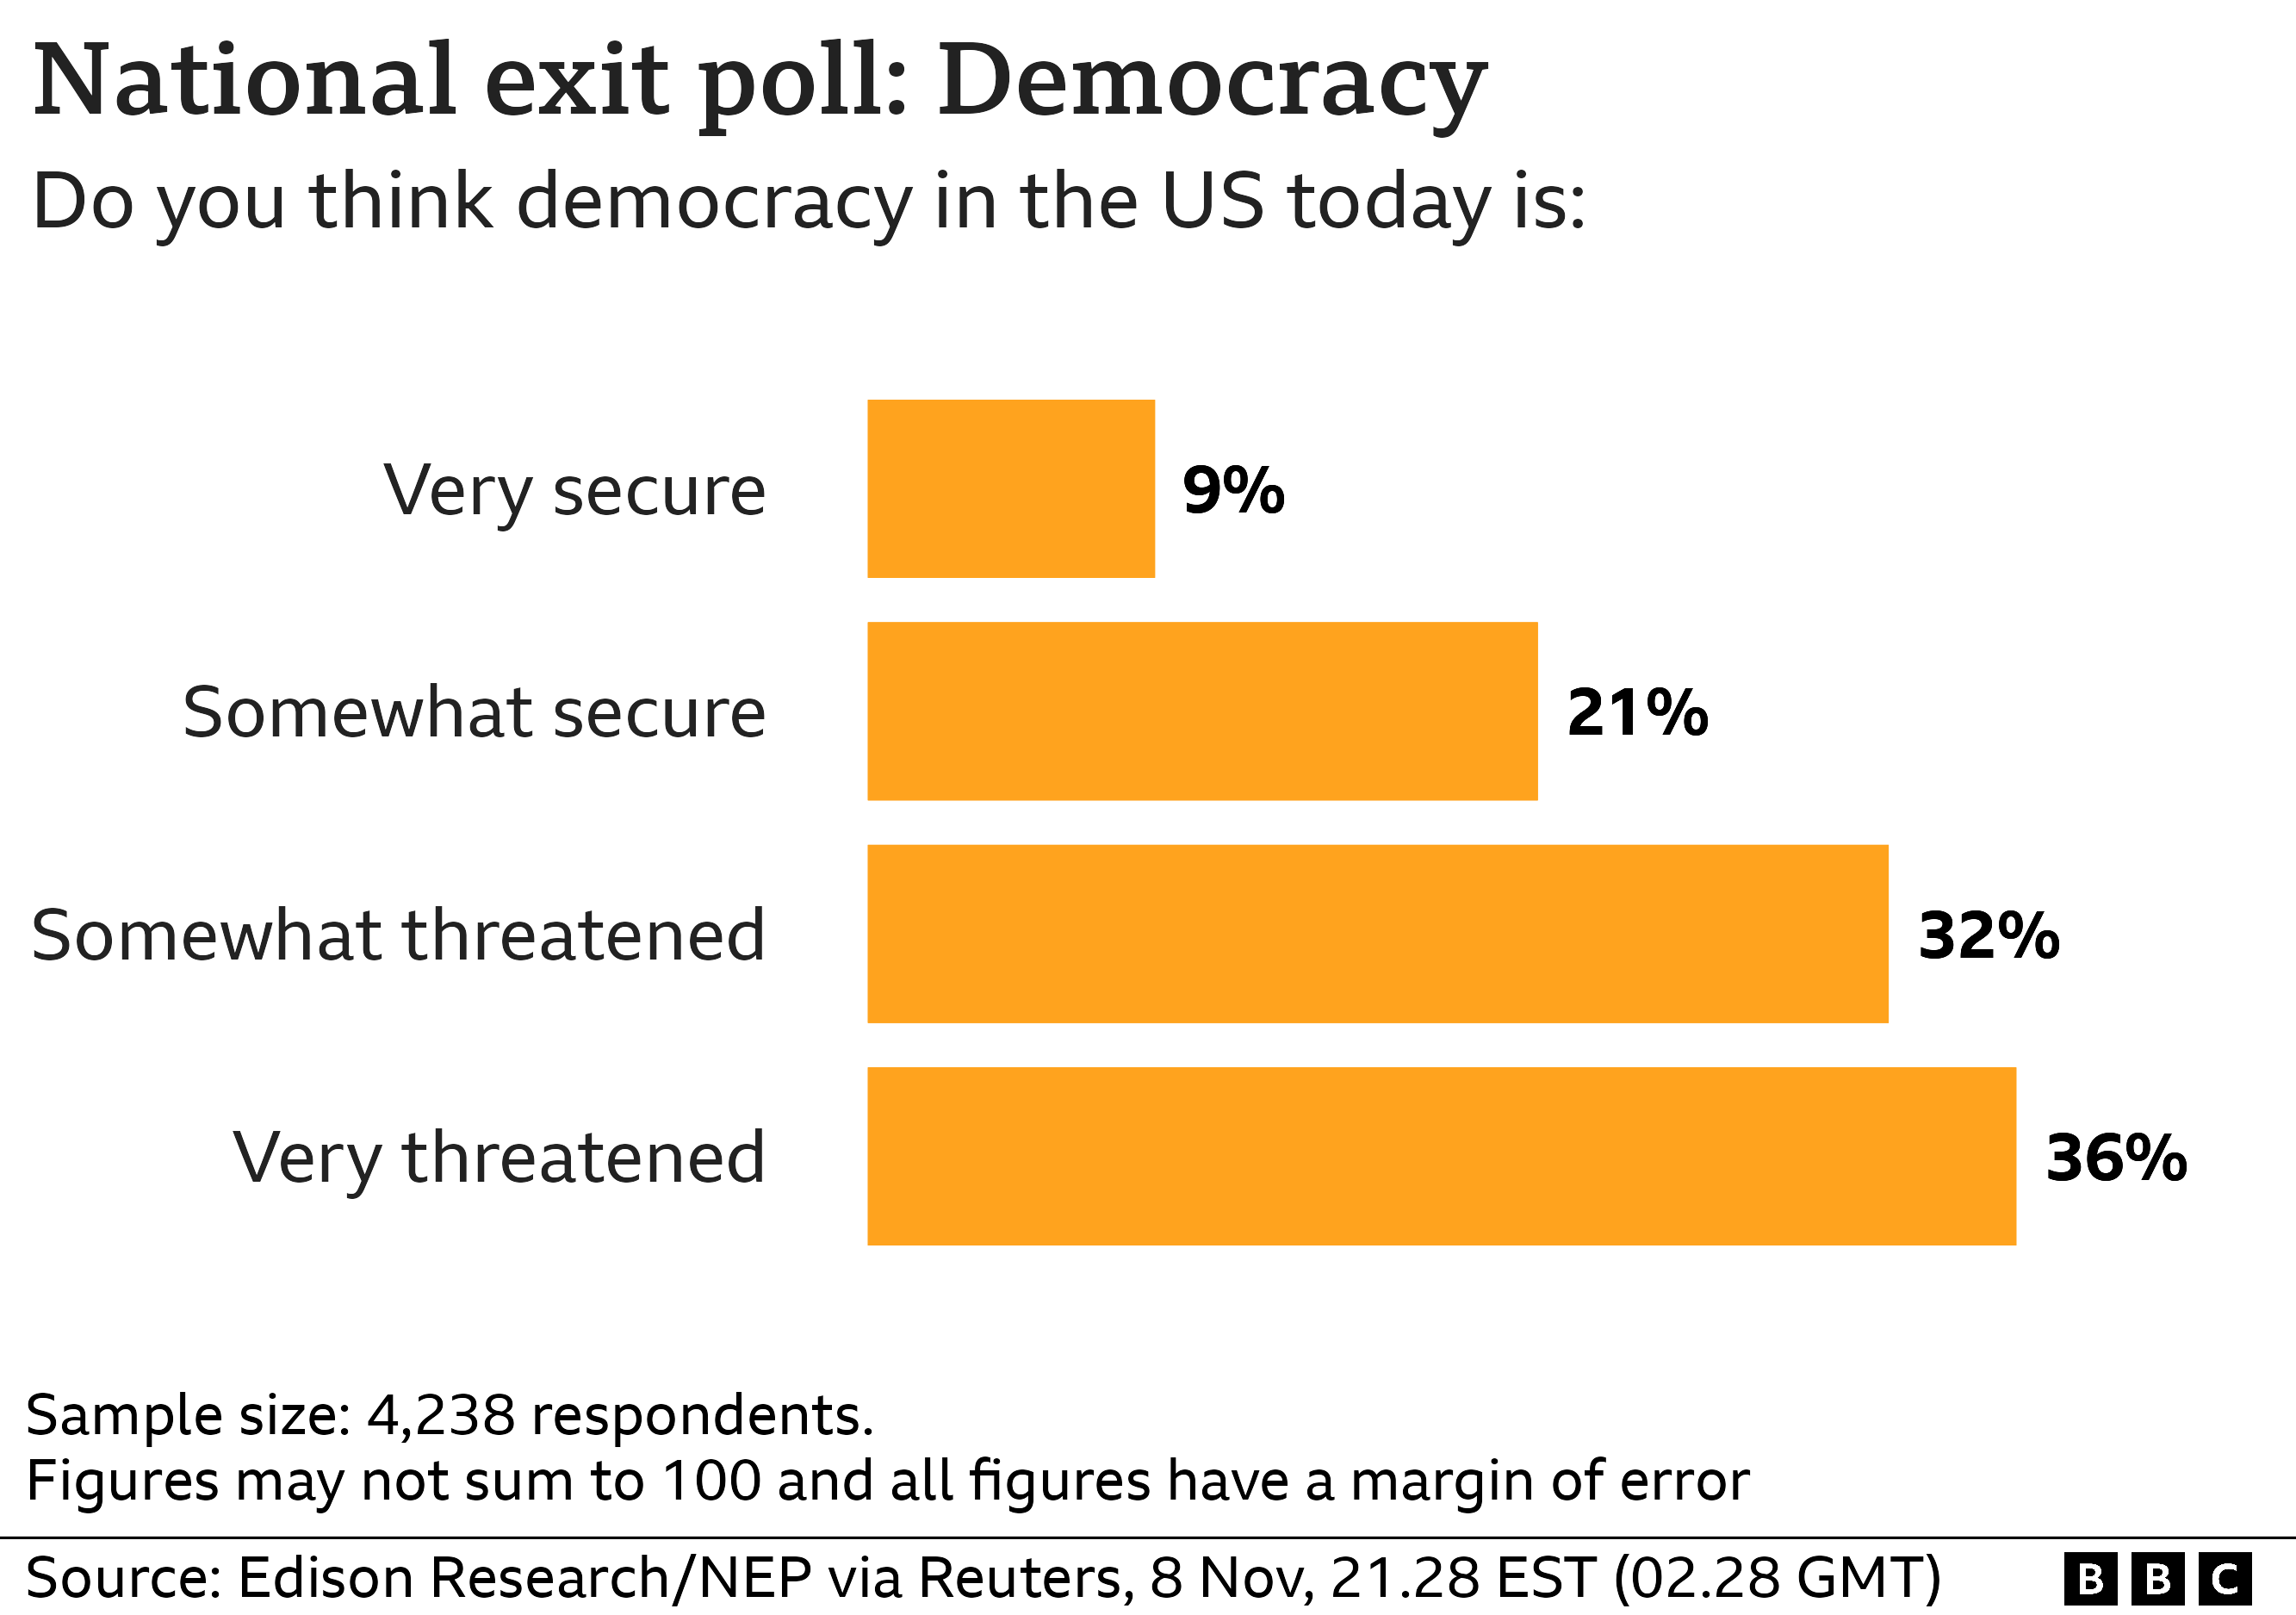 Экзит-пол: Считаете ли вы, что демократия в США сегодня: Очень безопасна 9%, В некоторой степени безопасна: 21%, В некоторой степени находится под угрозой: 32%, Под большой угрозой: 36%